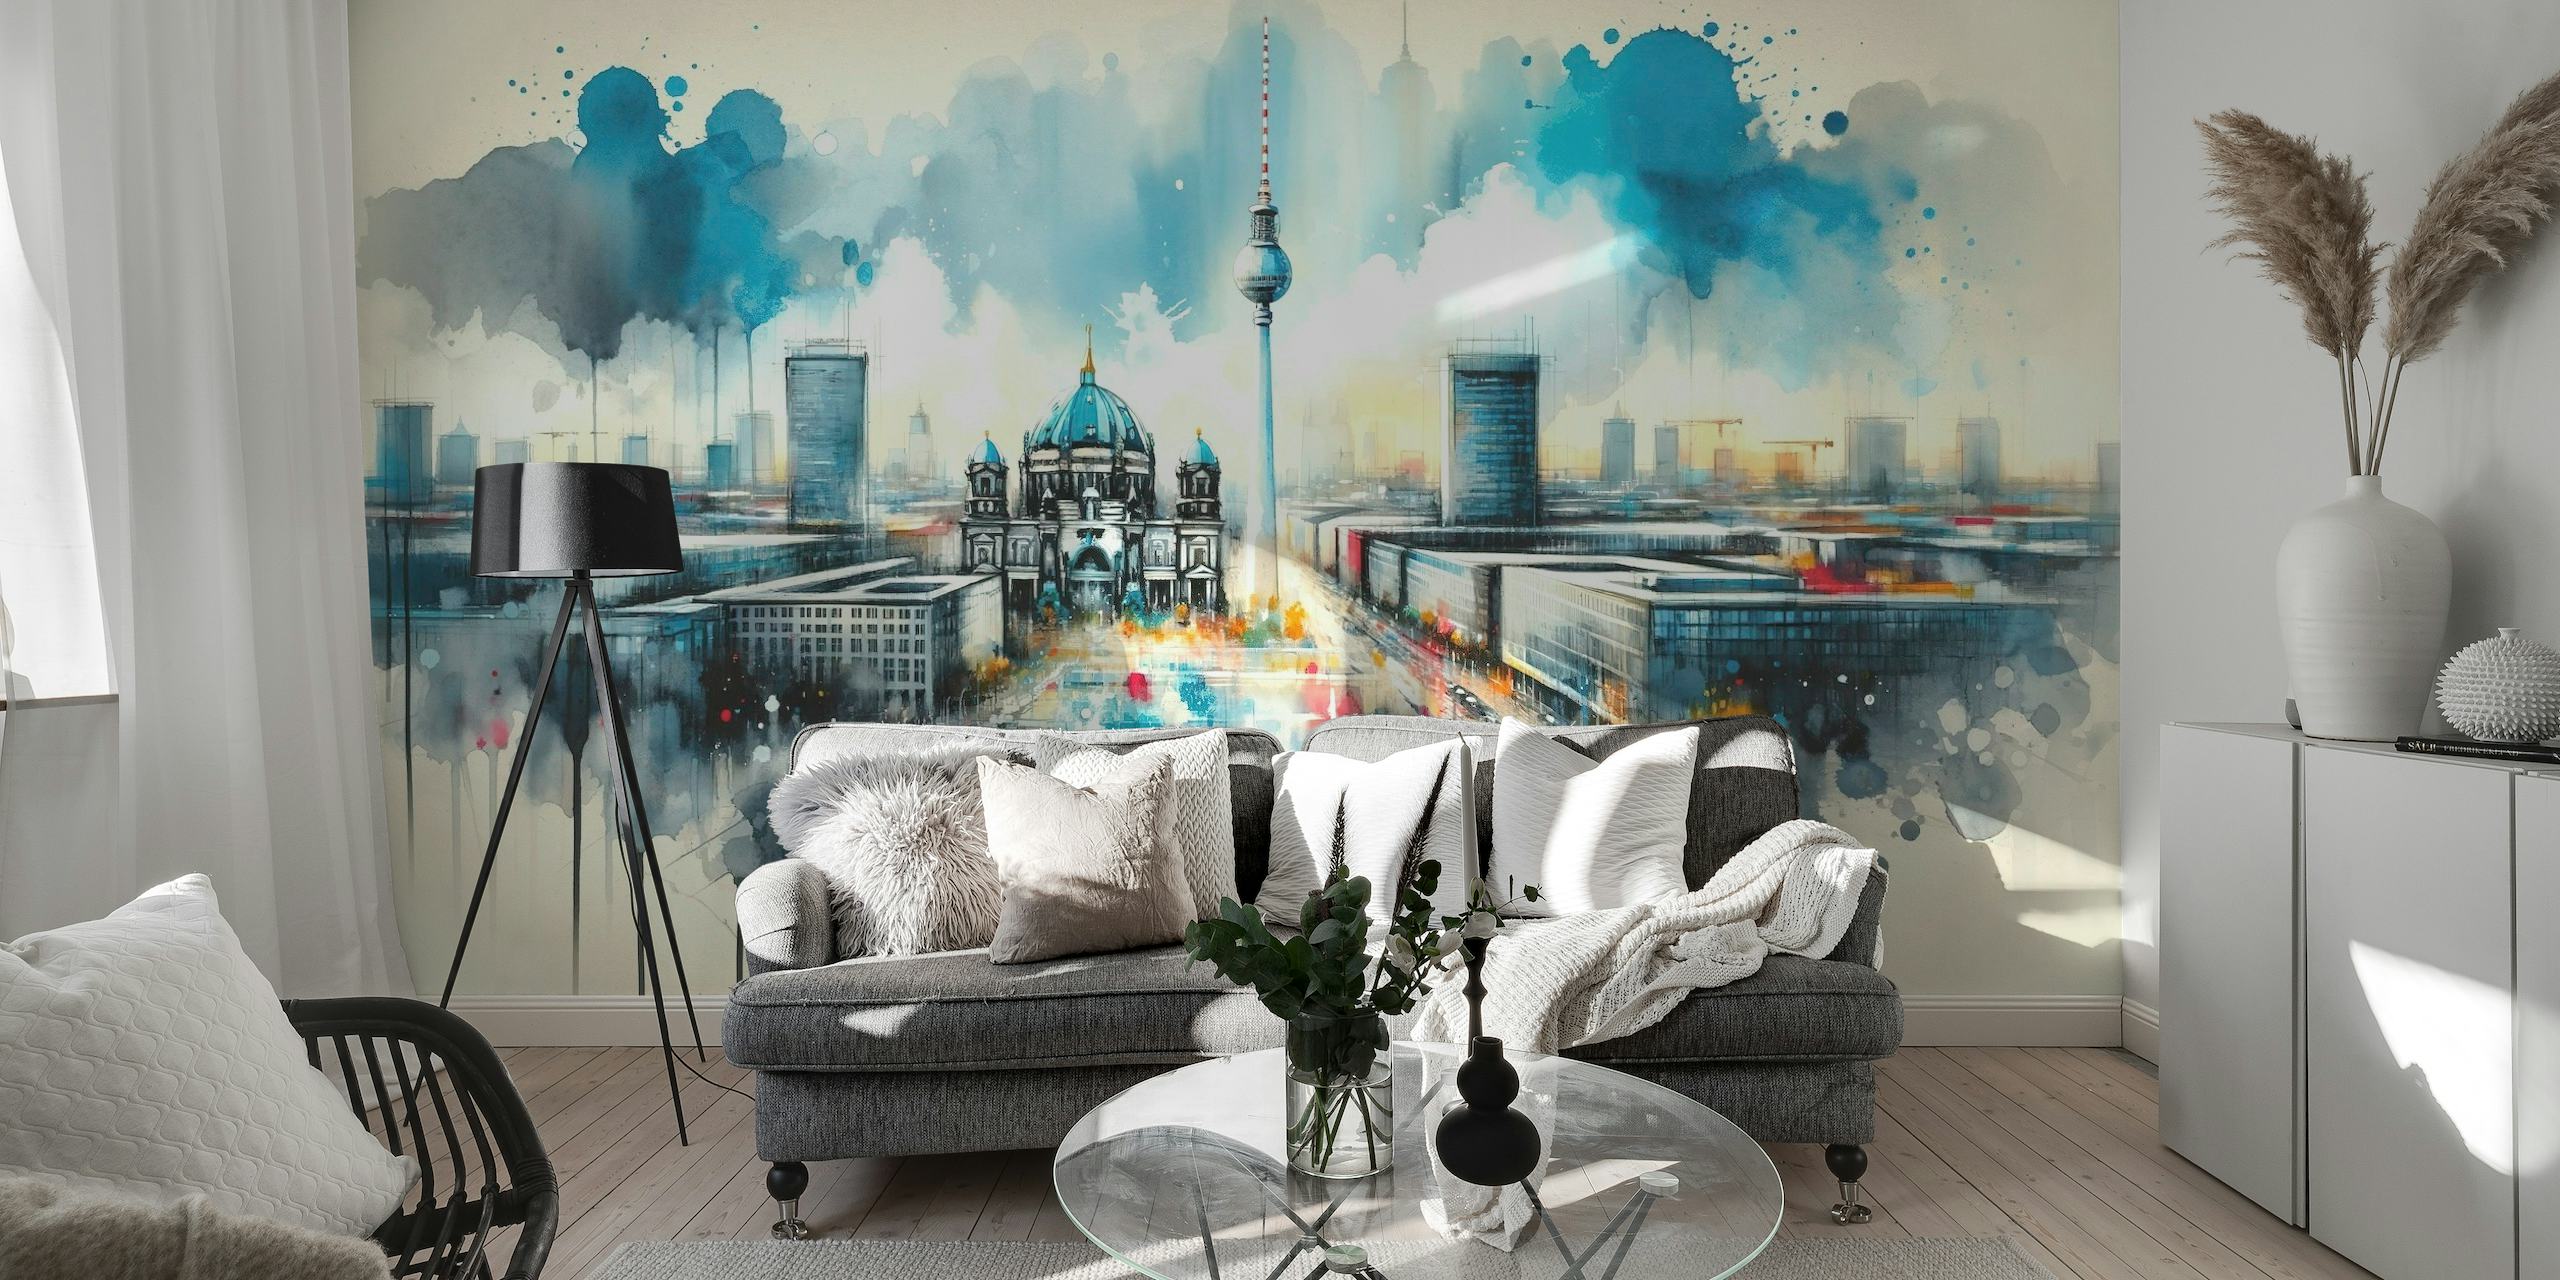 Peinture murale à l'aquarelle de l'architecture moderne de Berlin avec des monuments emblématiques et une interprétation dynamique et artistique.